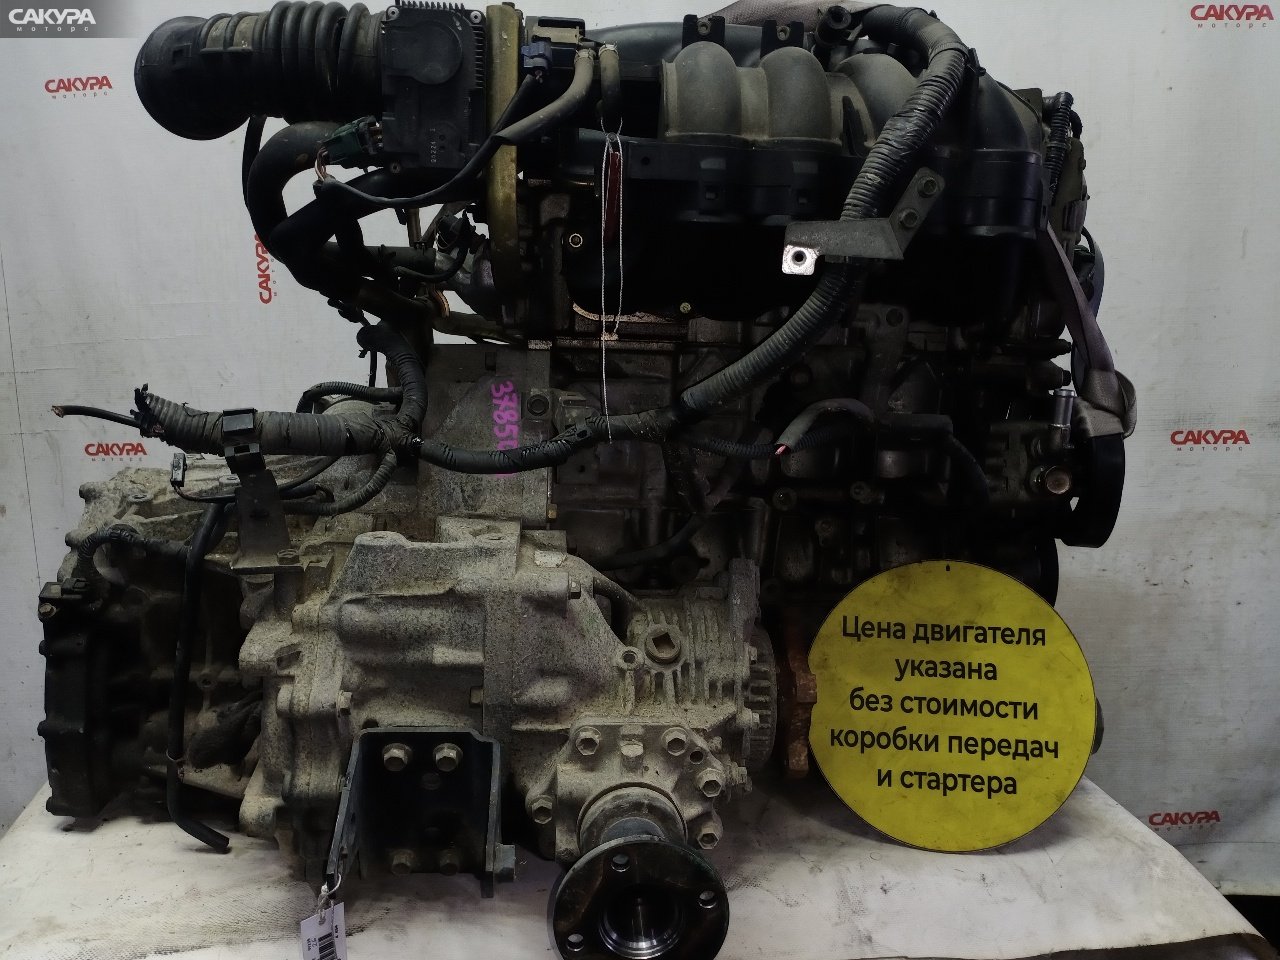 Двигатель Nissan X-TRAIL NT30 QR20DE: купить в Сакура Красноярск.